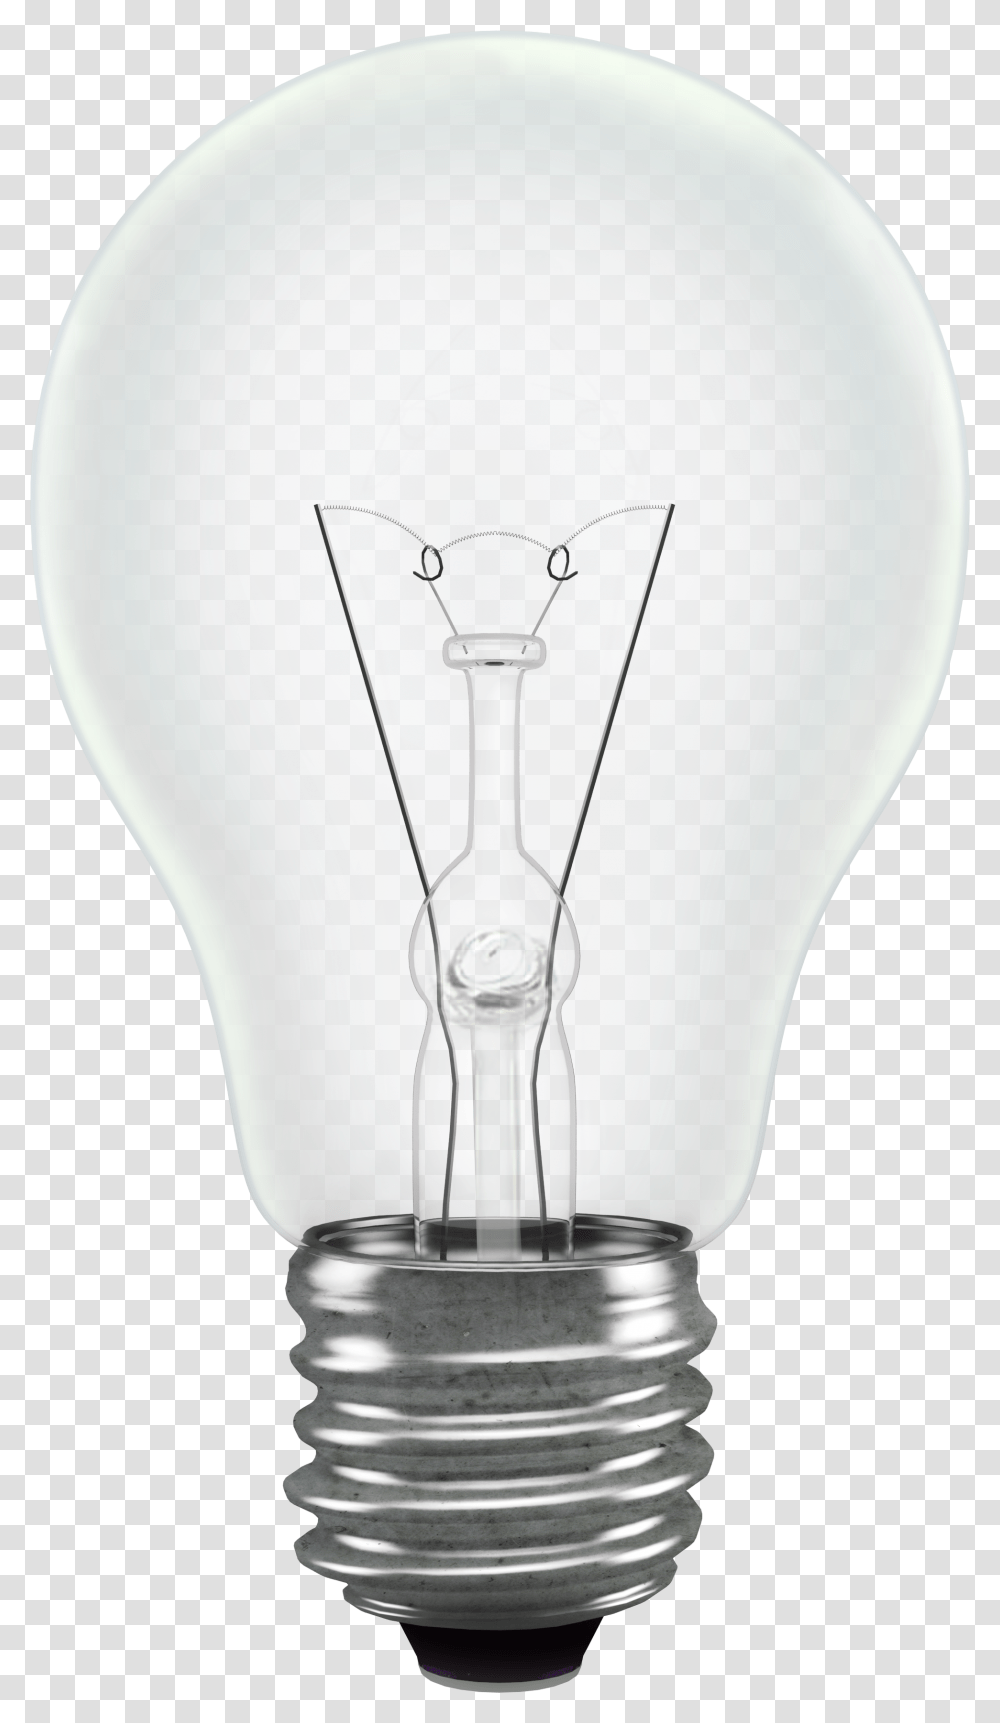 Light Filament Bulb Standard Shape Background Light Bulb Background, Lamp, Lightbulb, Mixer, Appliance Transparent Png